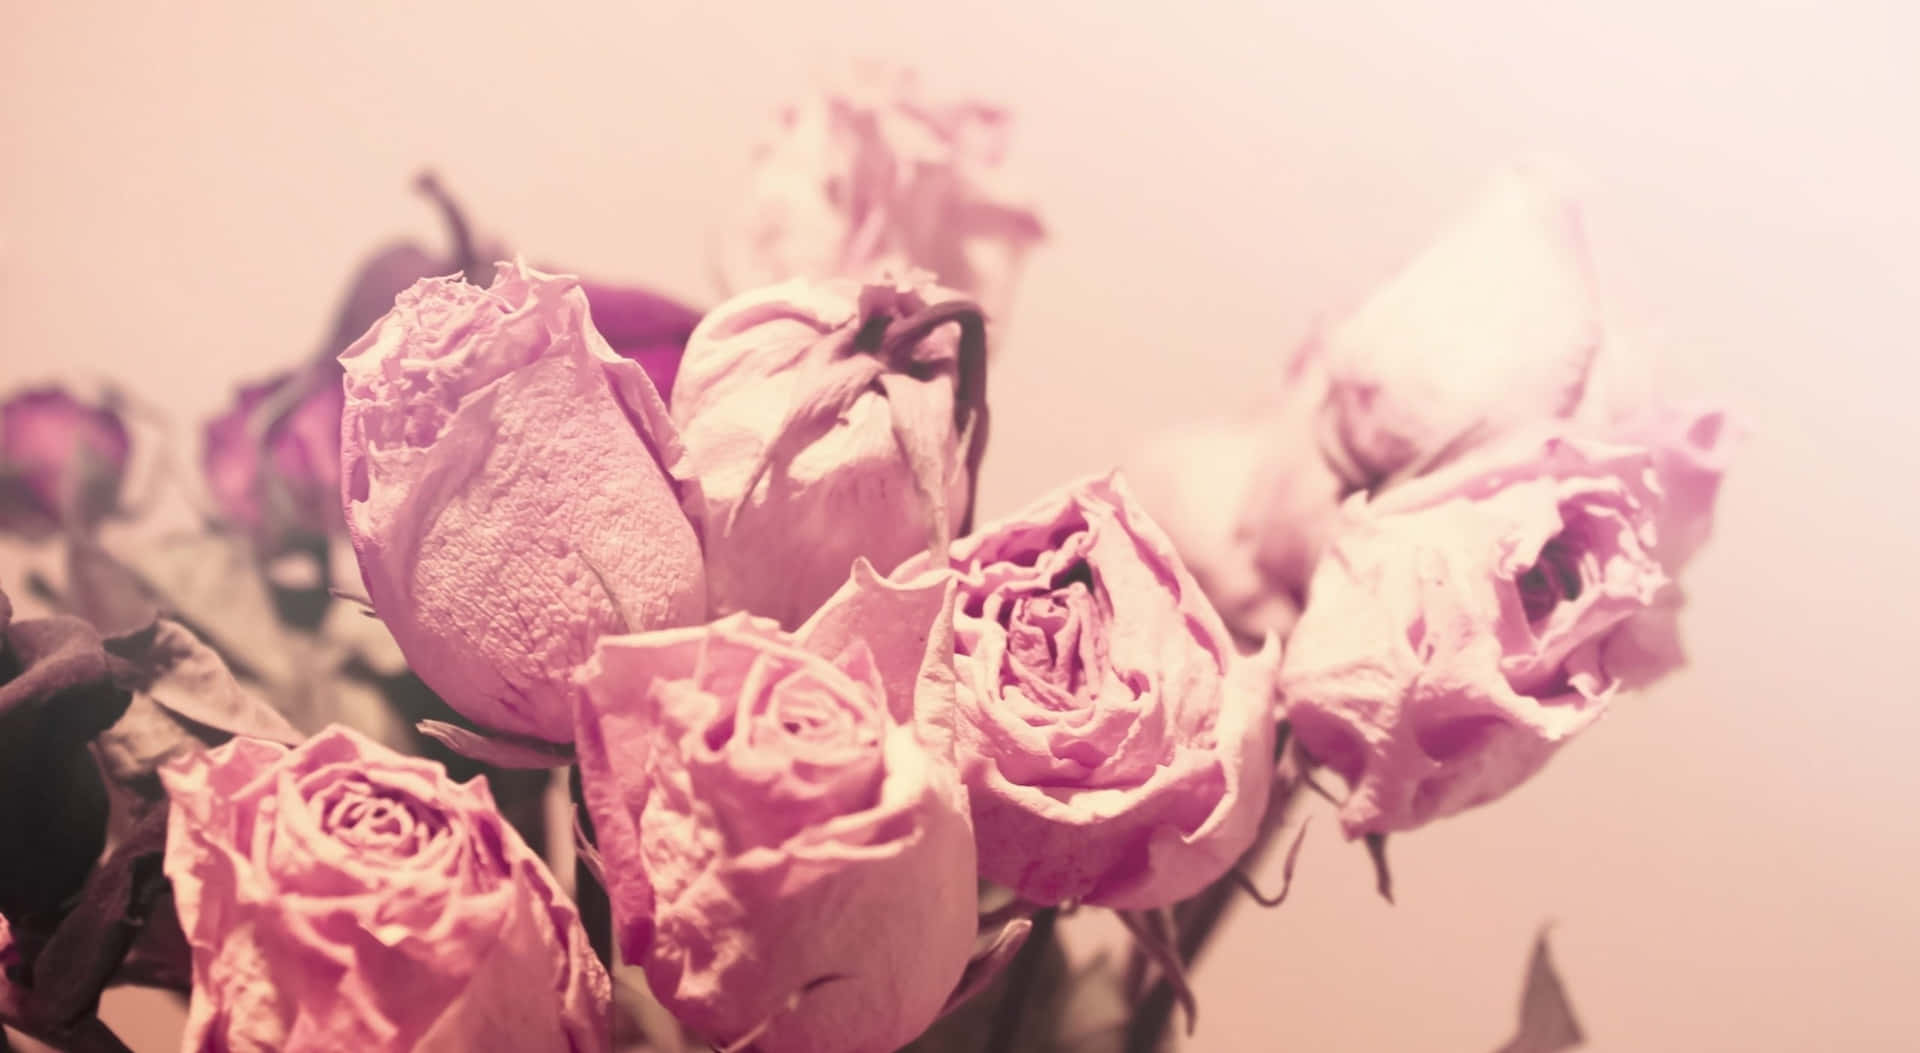 Sfondocon Rose Appassite In Stile Estetico Rosa A Risoluzione 1440p